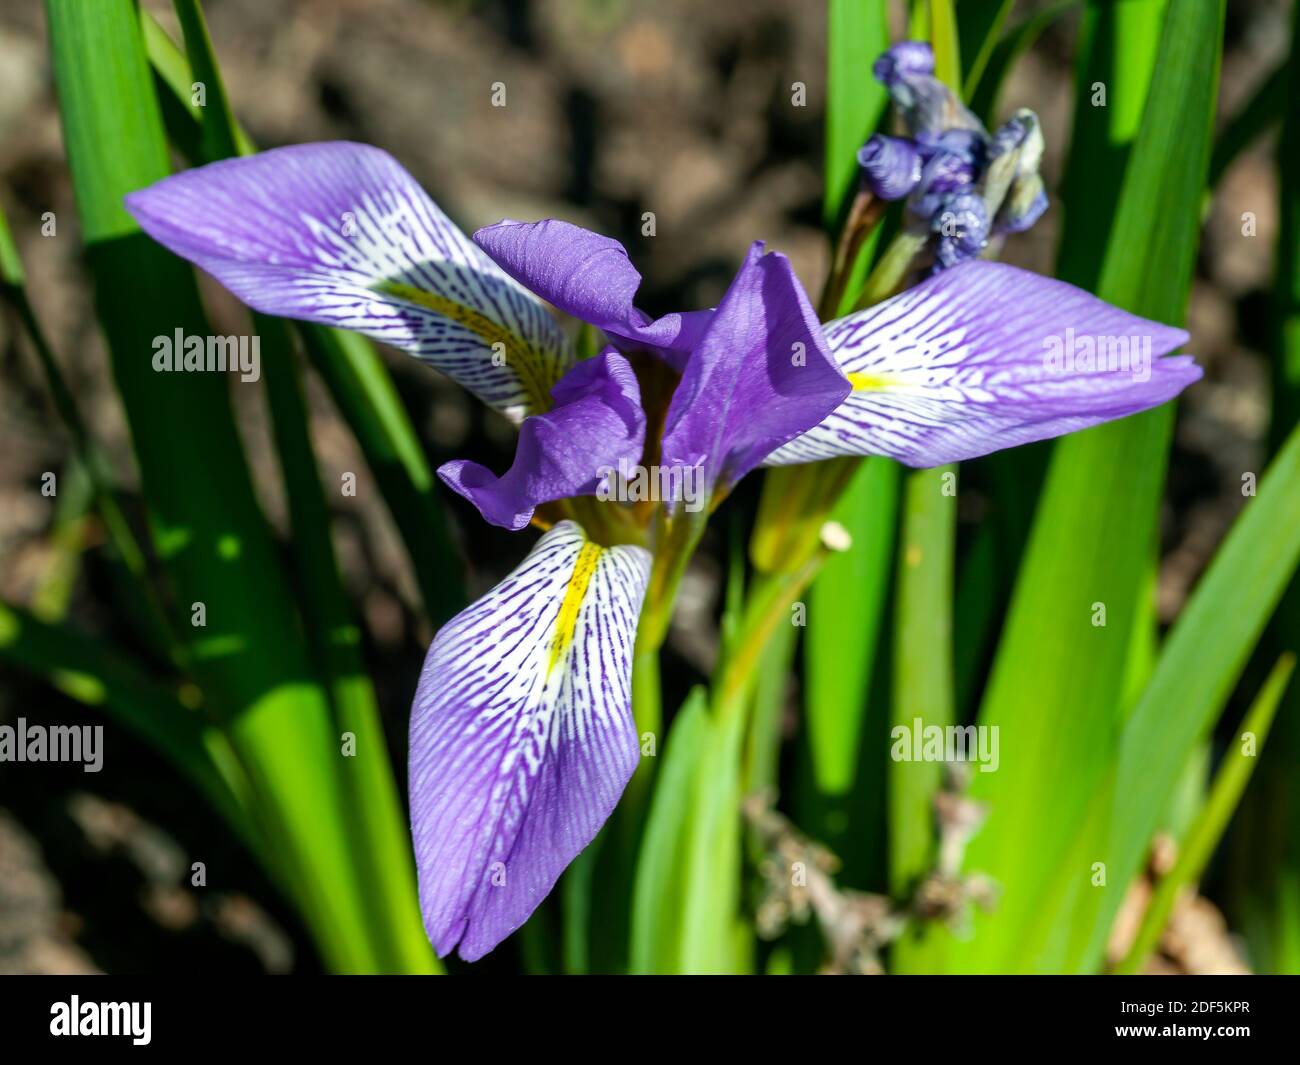 Iris lazica plante à fleurs de printemps d'hiver avec une fleur de printemps pourpre communément connue sous le nom d'iris de Lazistan, image de photo de stock Banque D'Images